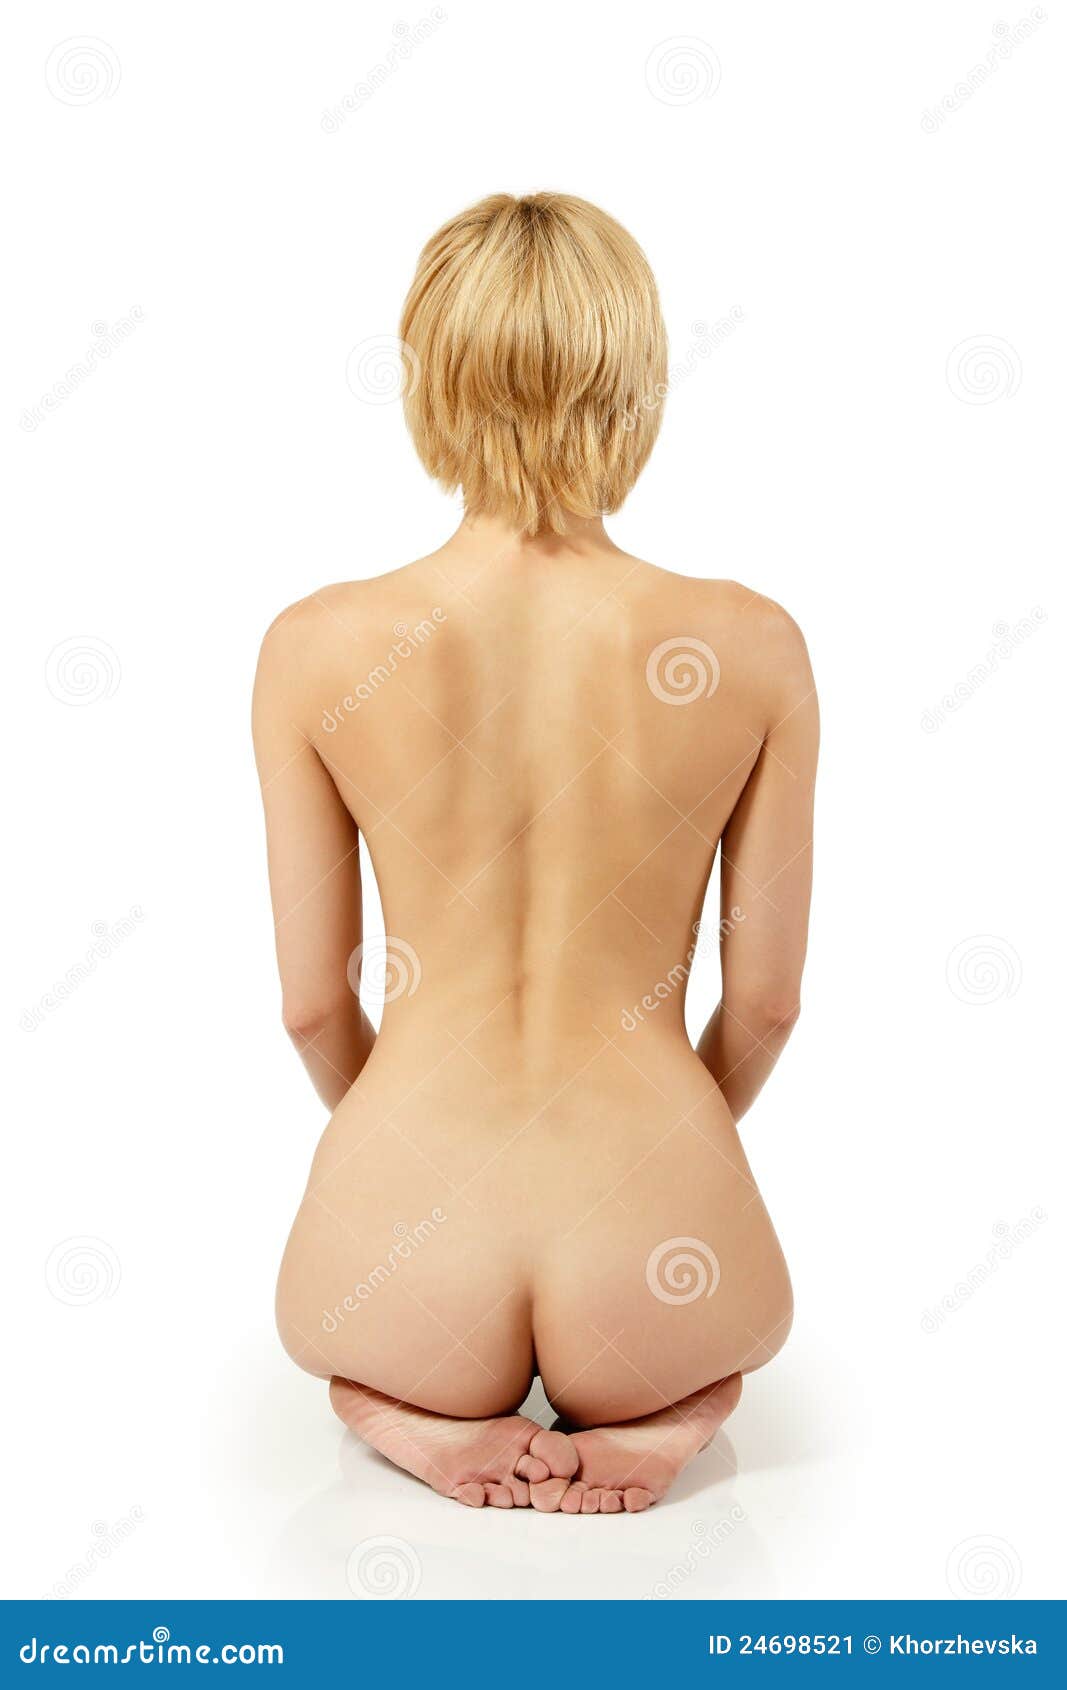 Woman - nude photos